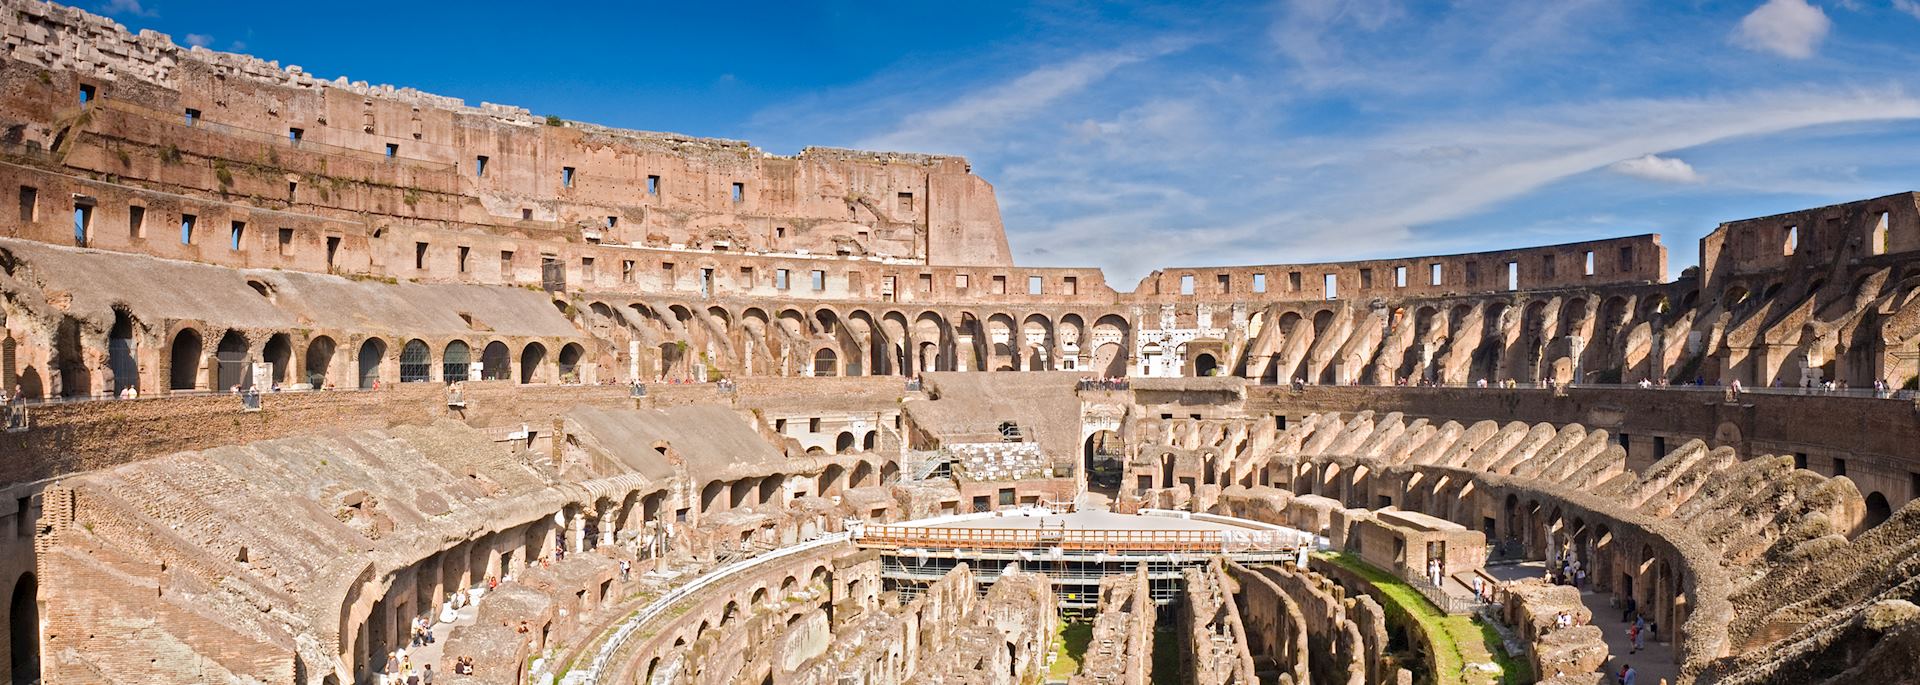 Amphitheatre of the Colosseum, Rome